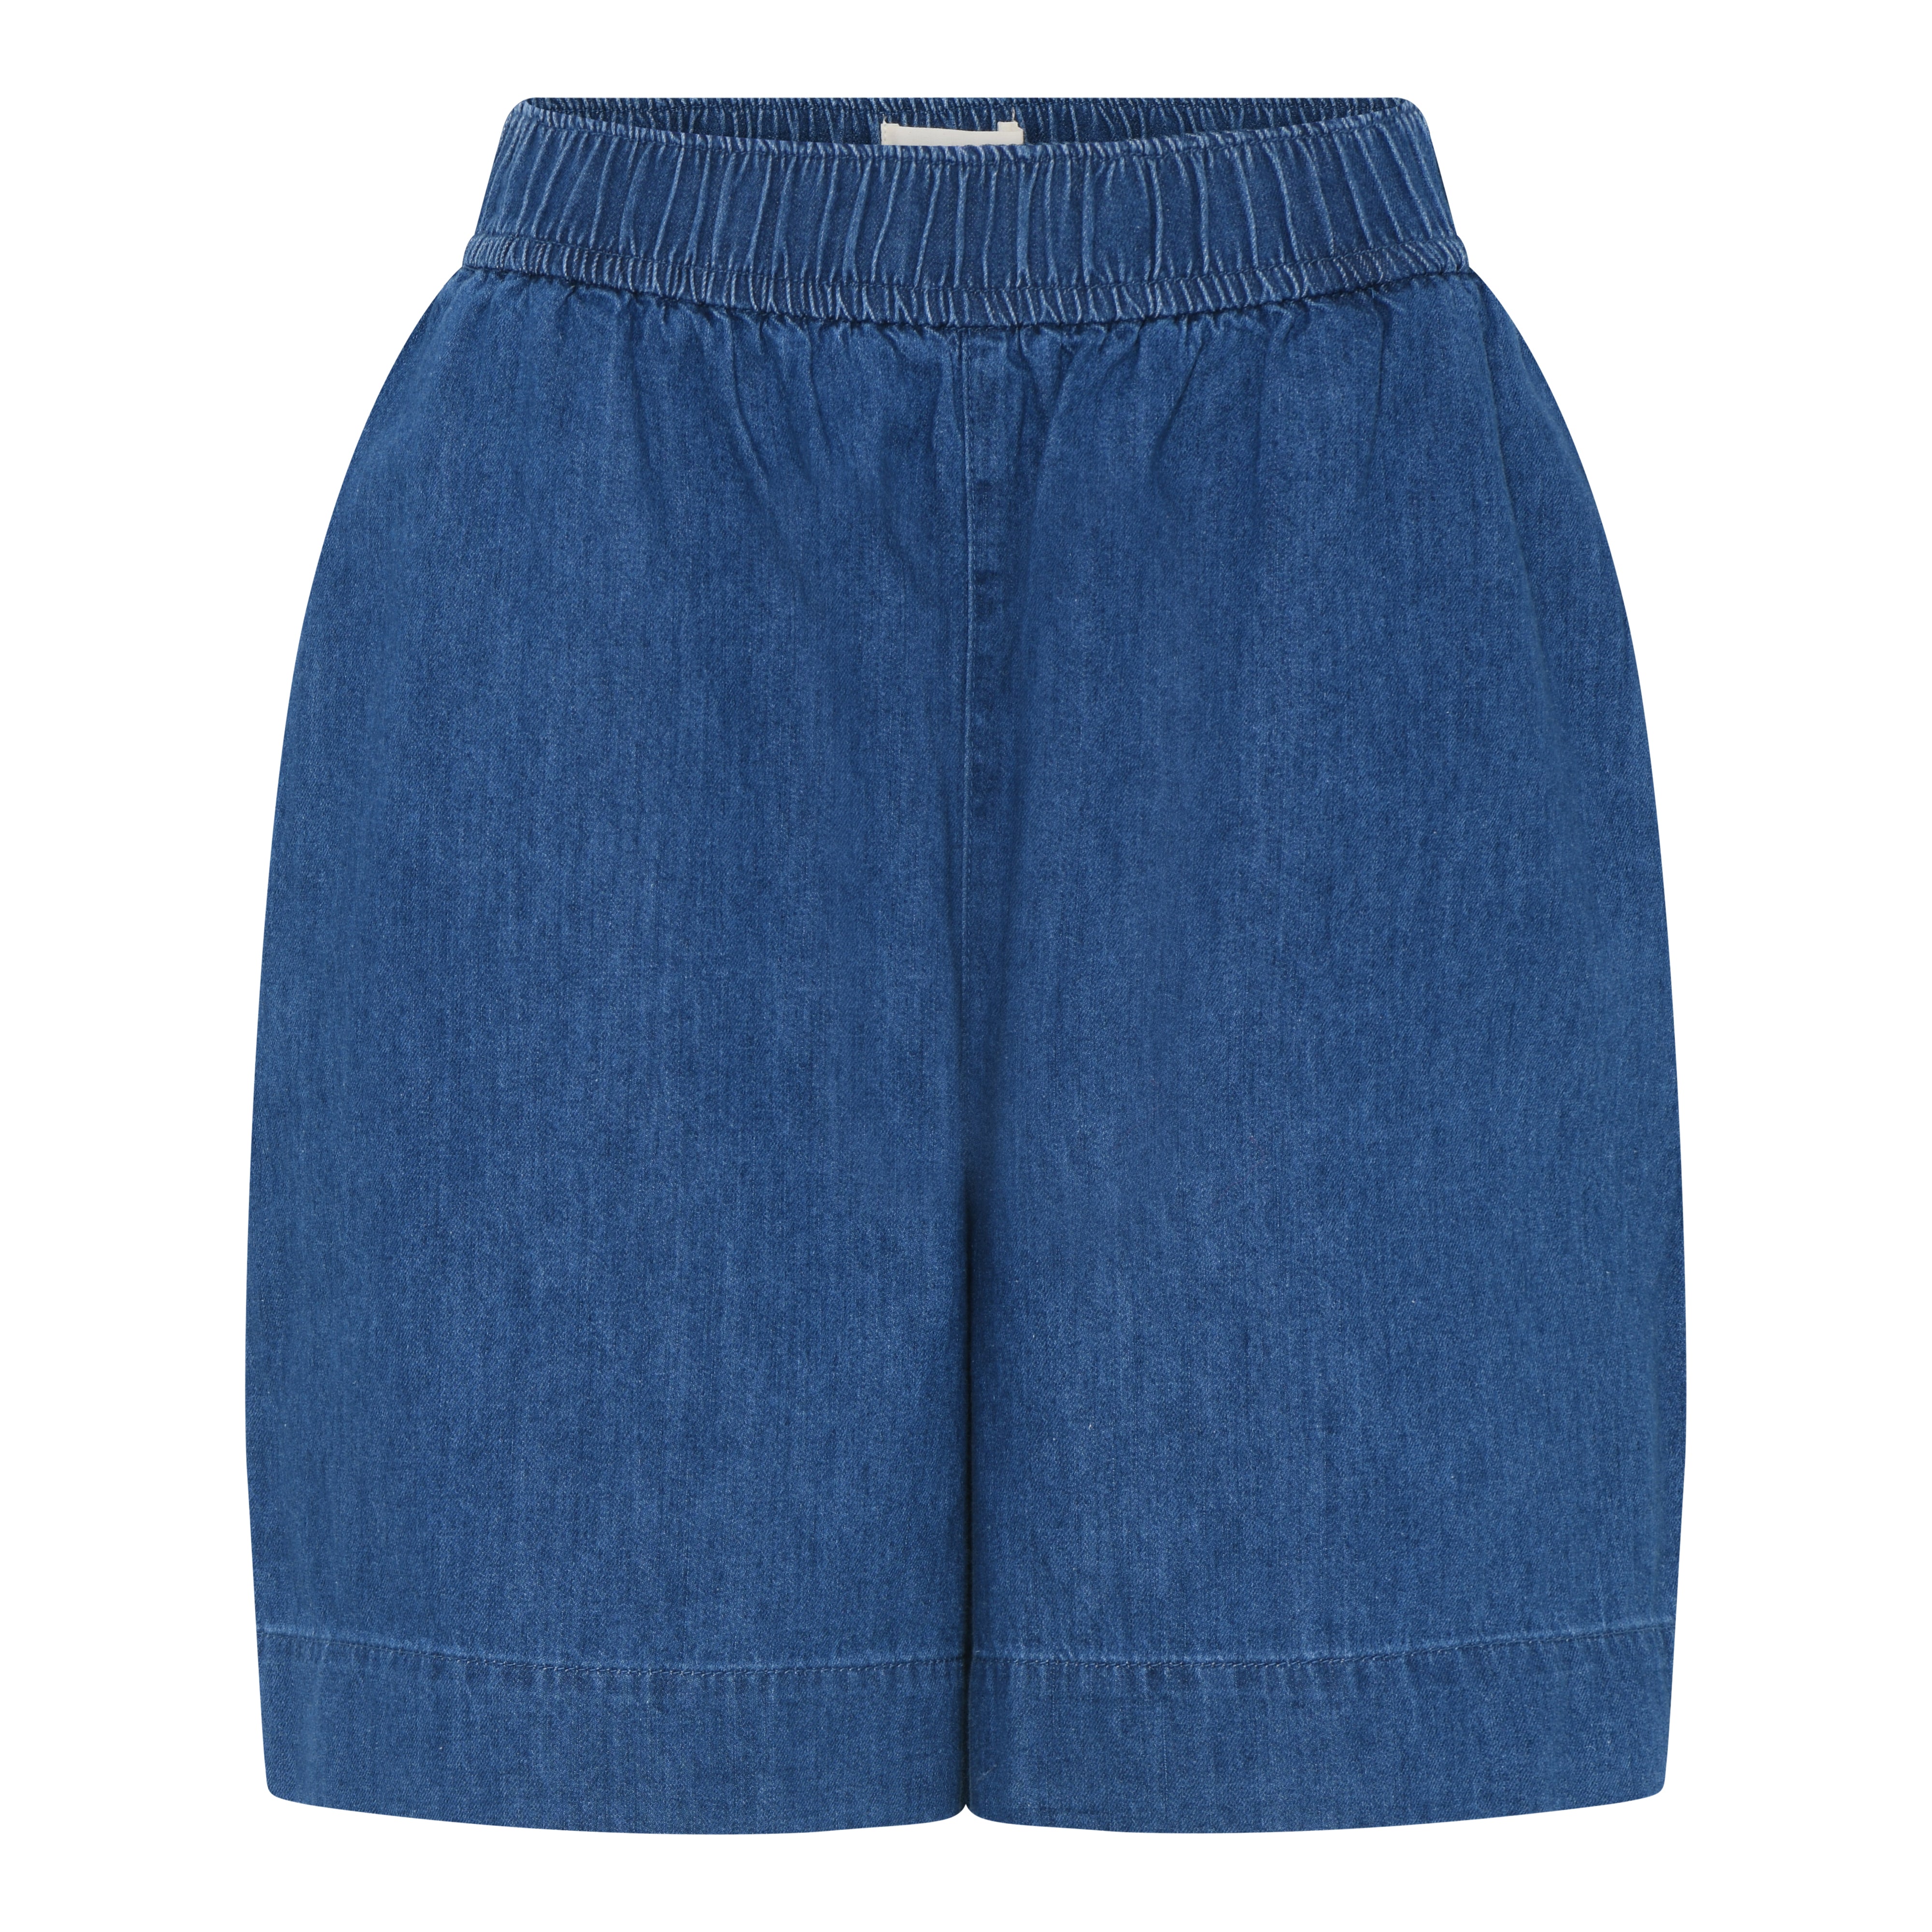 Frau Sydney denim shorts clear blue denim